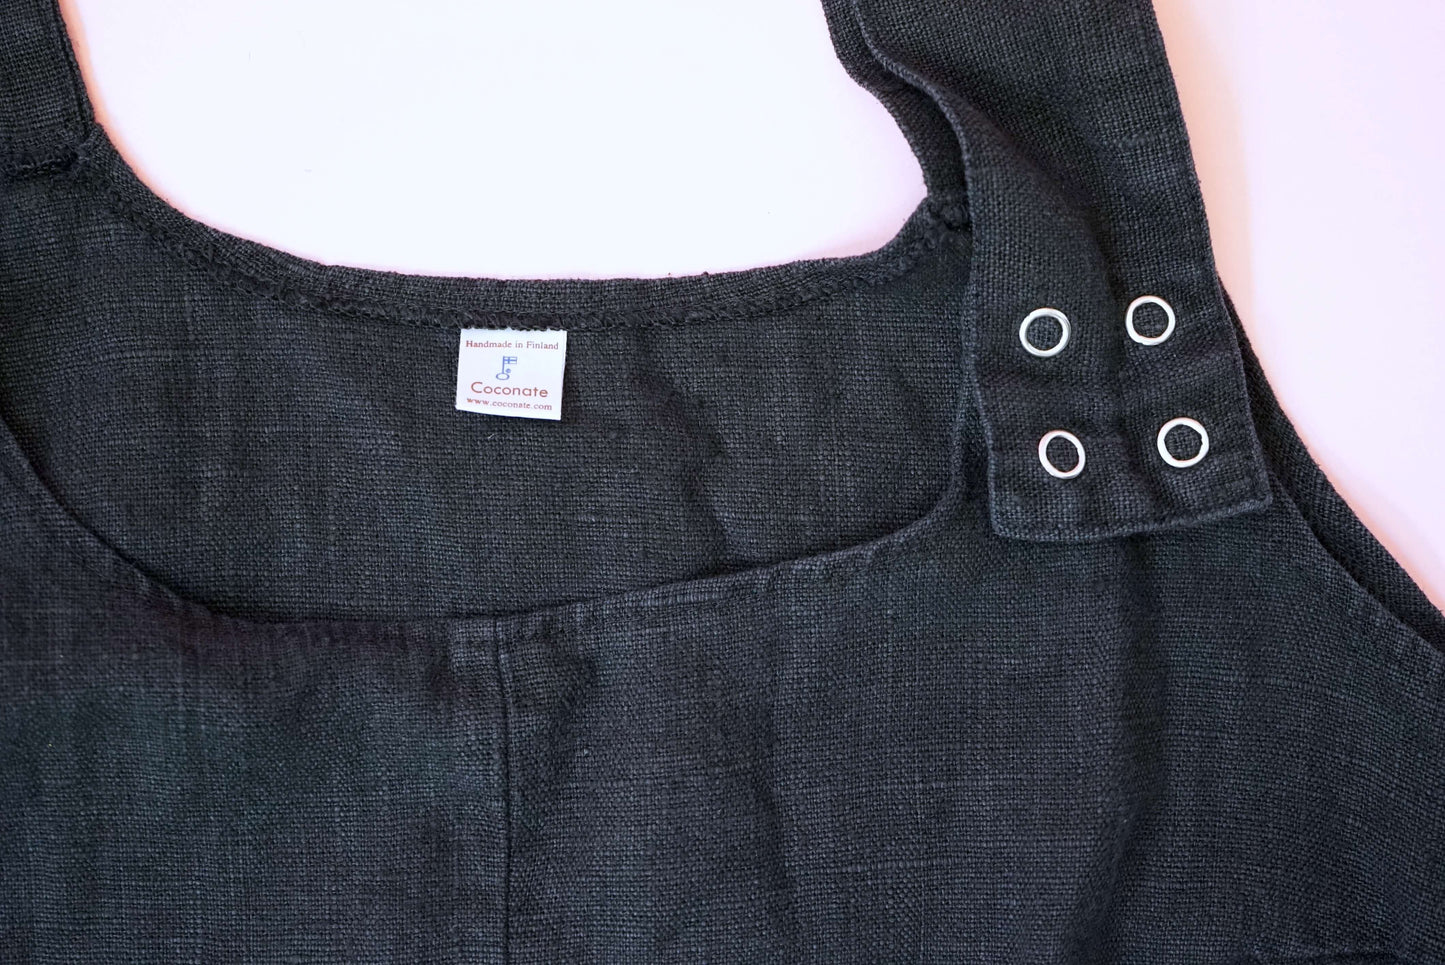 Black 100% Linen Sarafan Dress Vintage Asymmetrical Size L